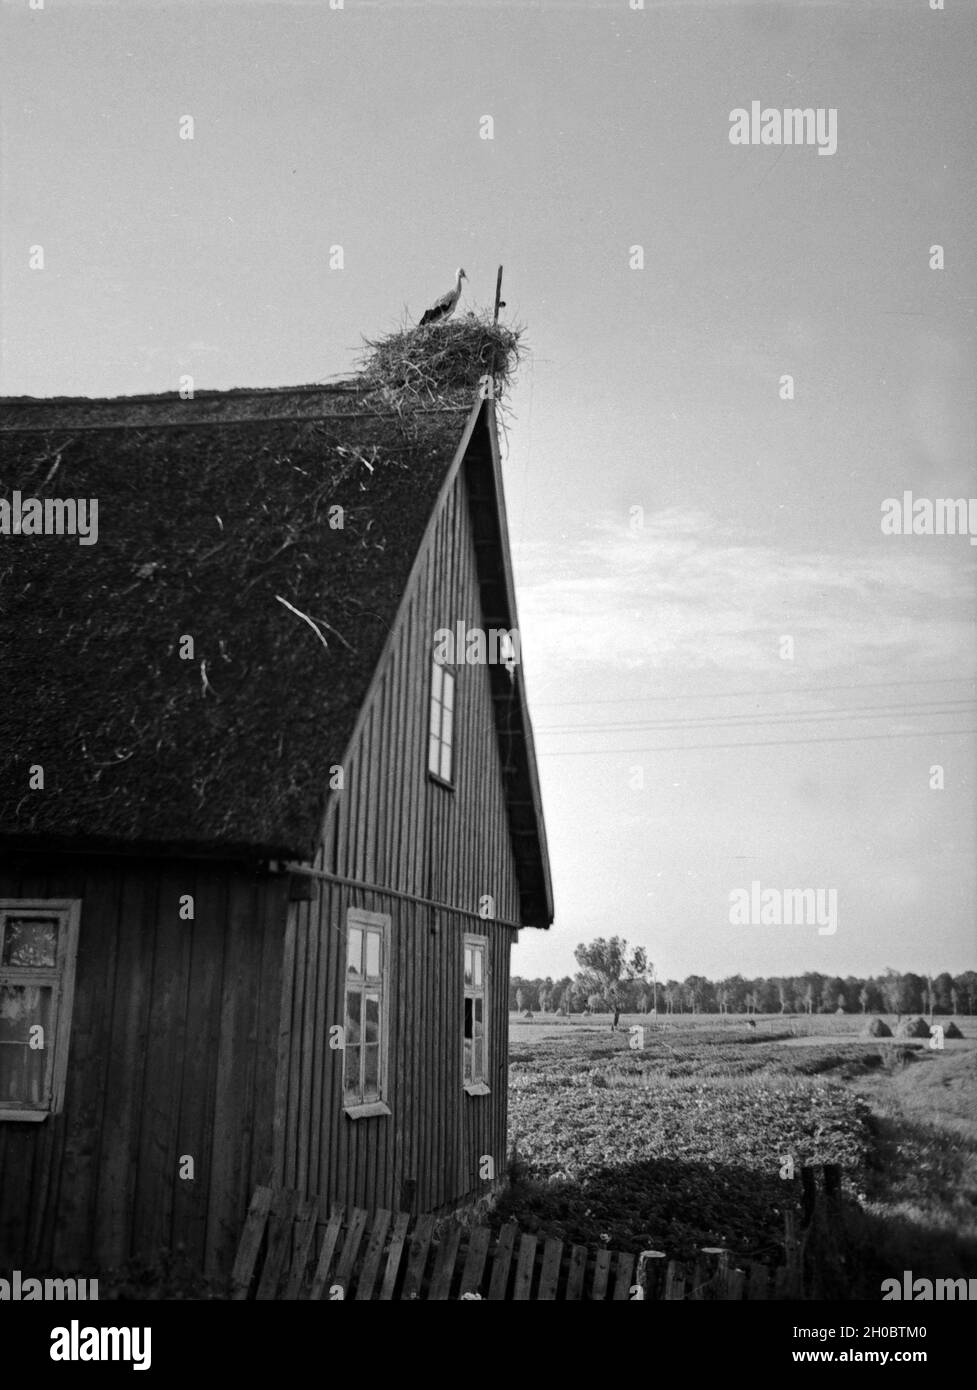 Ein Storch dans seinem Nest auf einem Bauernhaus dans Ostpreußen, années 30 er Jahre. Une cigogne dans son nid sur une ferme à l'Est de la Prusse, 1930. Banque D'Images